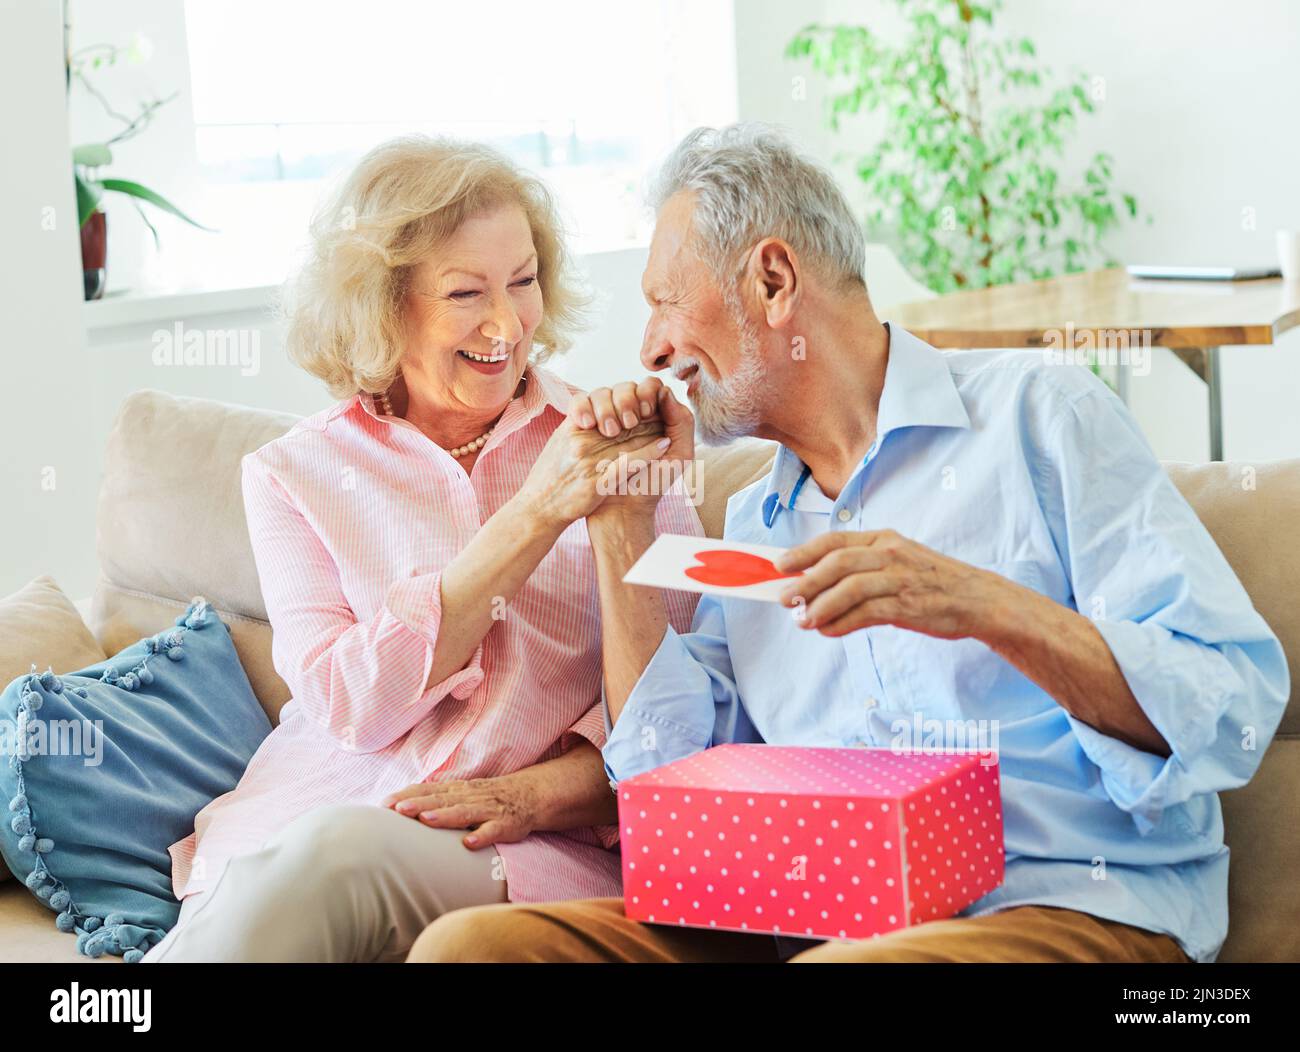 regalo mujer hombre pareja feliz amor felicidad presente beso romántico sonriendo juntos caja esposa marido anciano mayor maduro jubilado Foto de stock